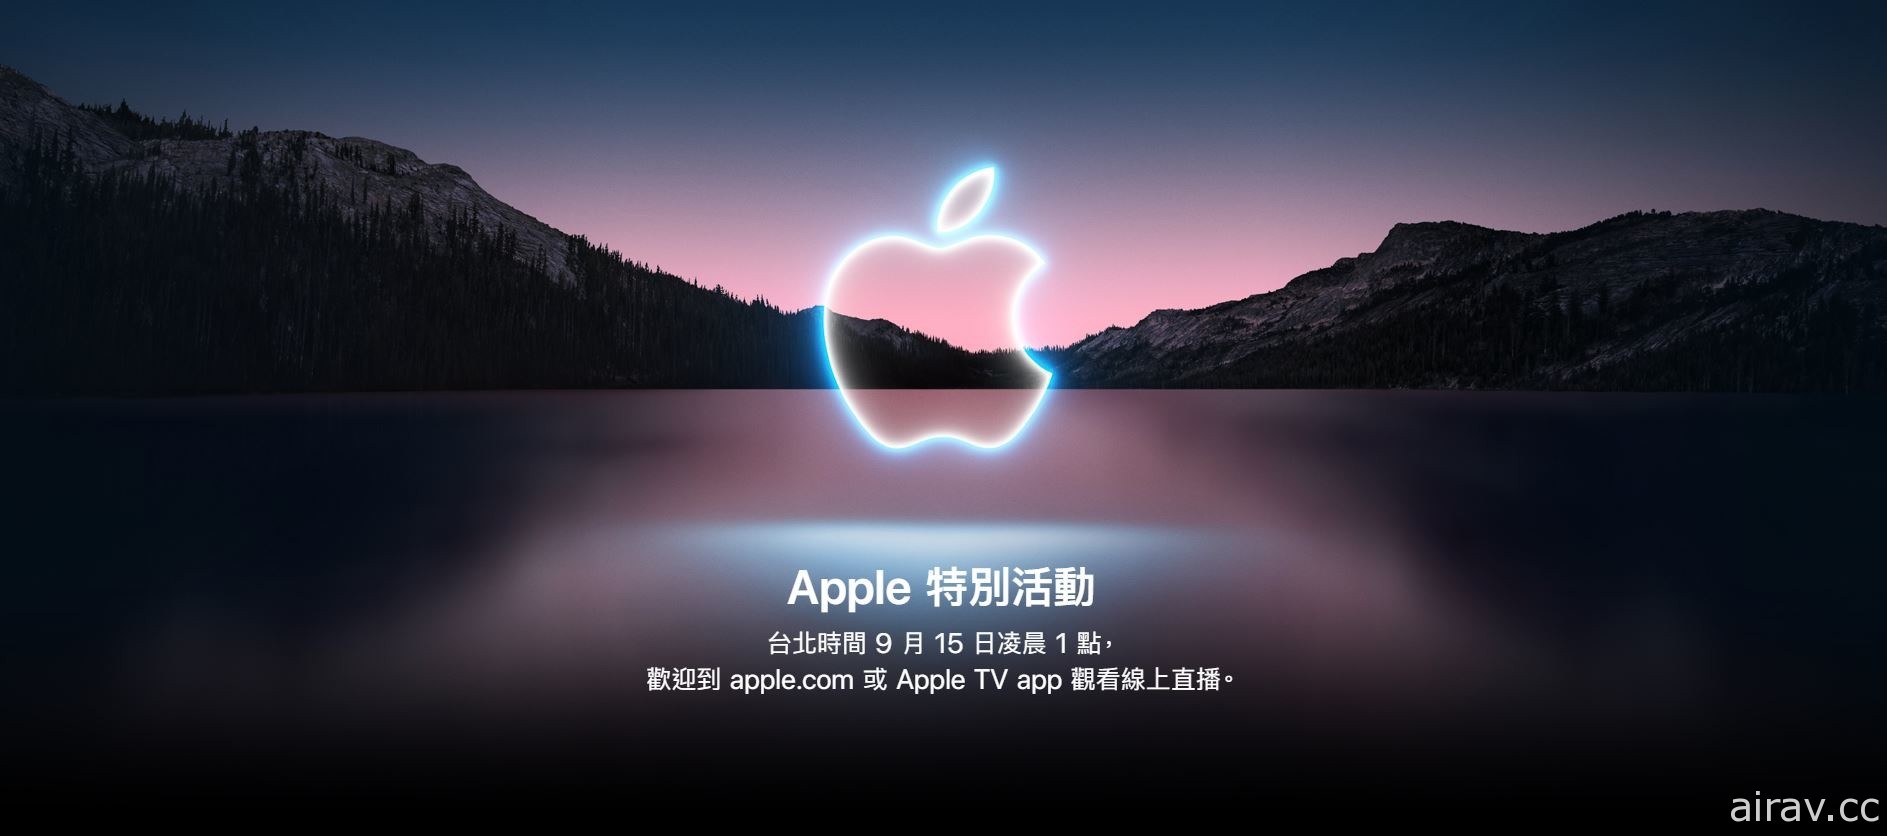 蘋果 2021 年秋季發表會將於台灣時間 15 日凌晨登場 預計揭露新產品資訊